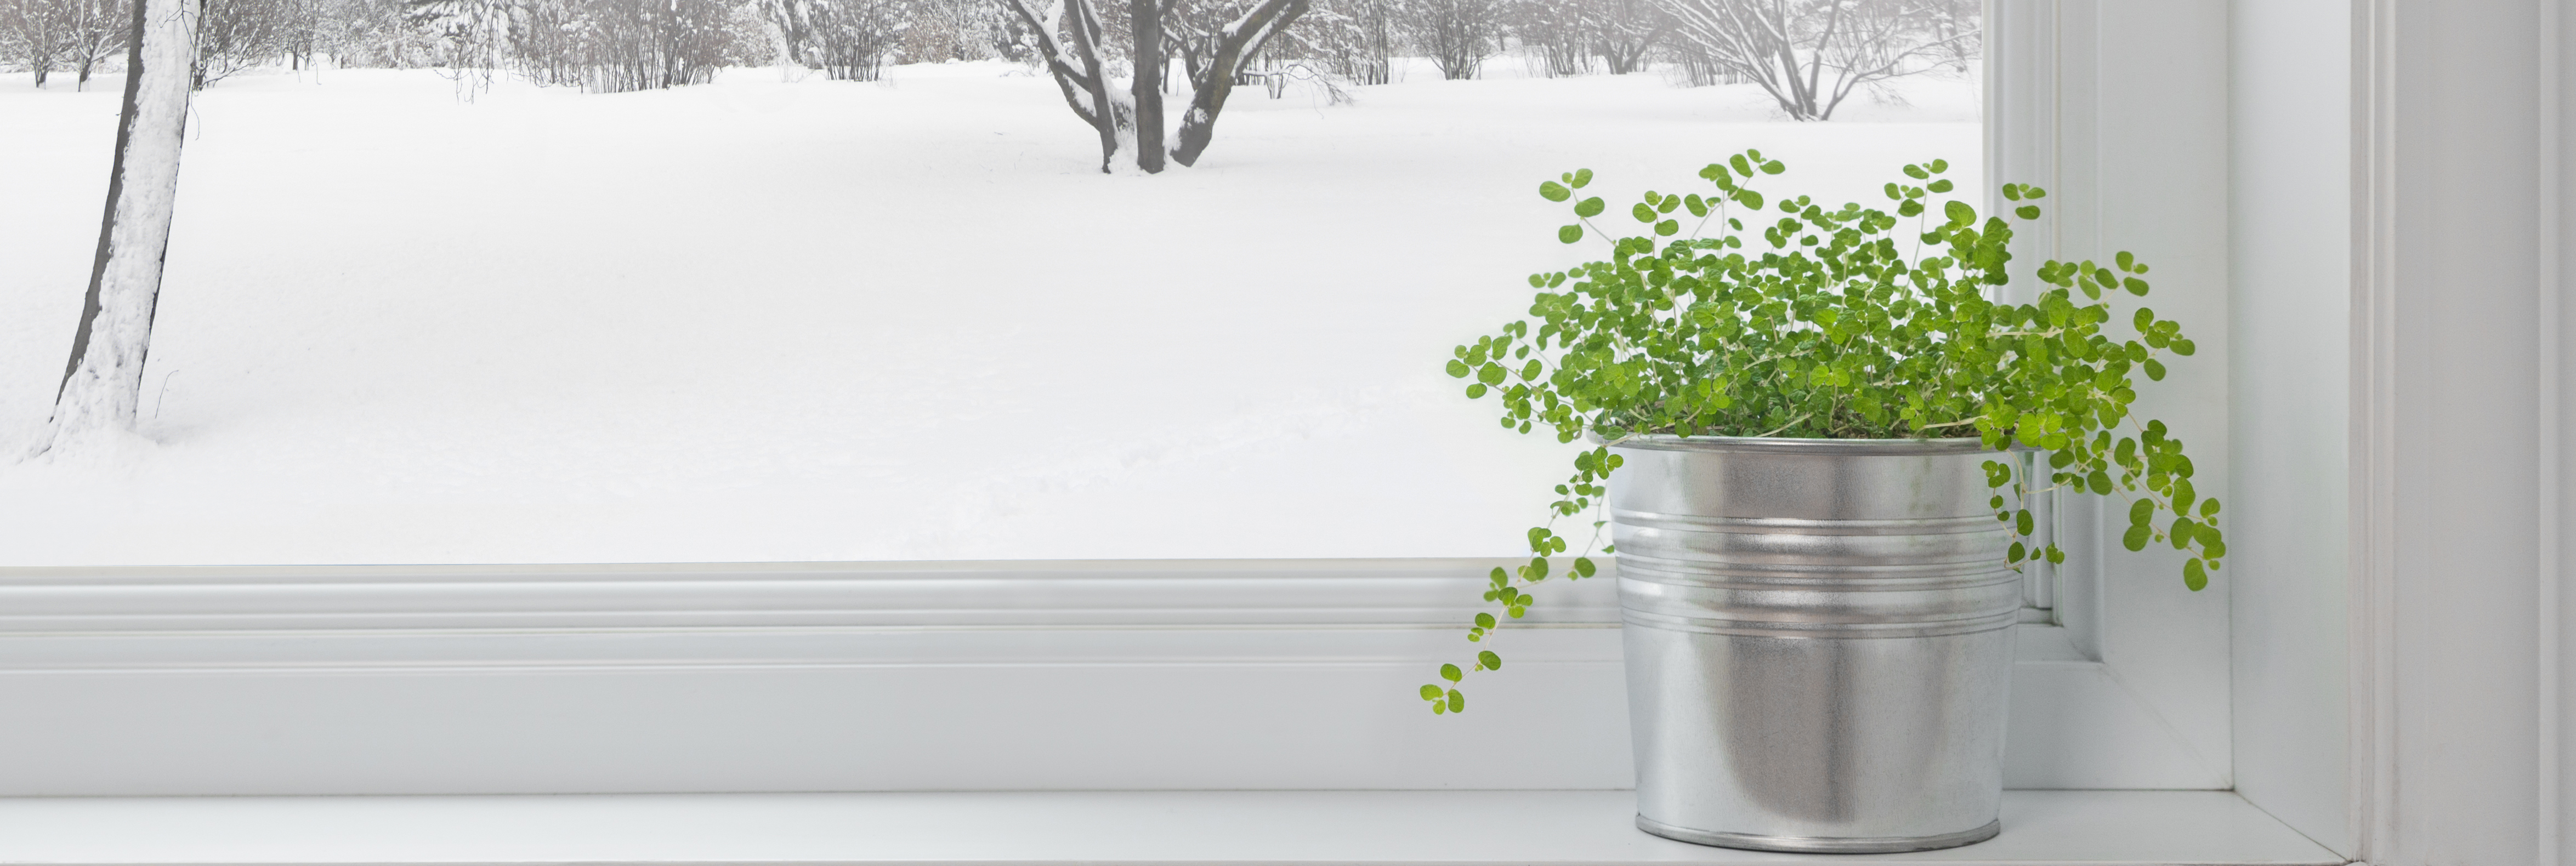 Zimmerpflanzen grünen auch bei Schnee und Frost